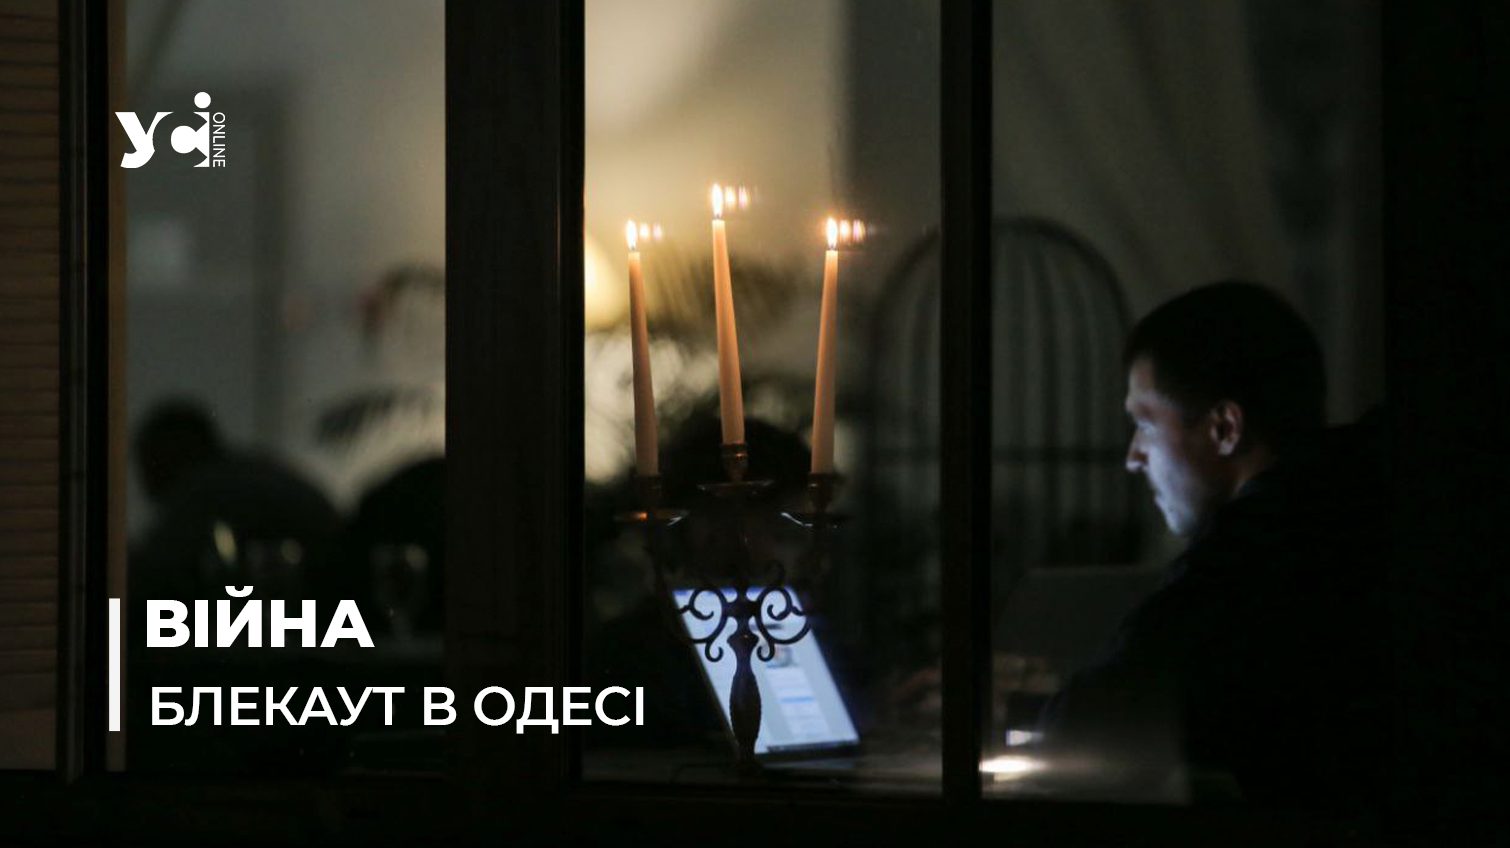 Зі свічками та на генераторах: як в Одесі переживають блекаут (фото) «фото»